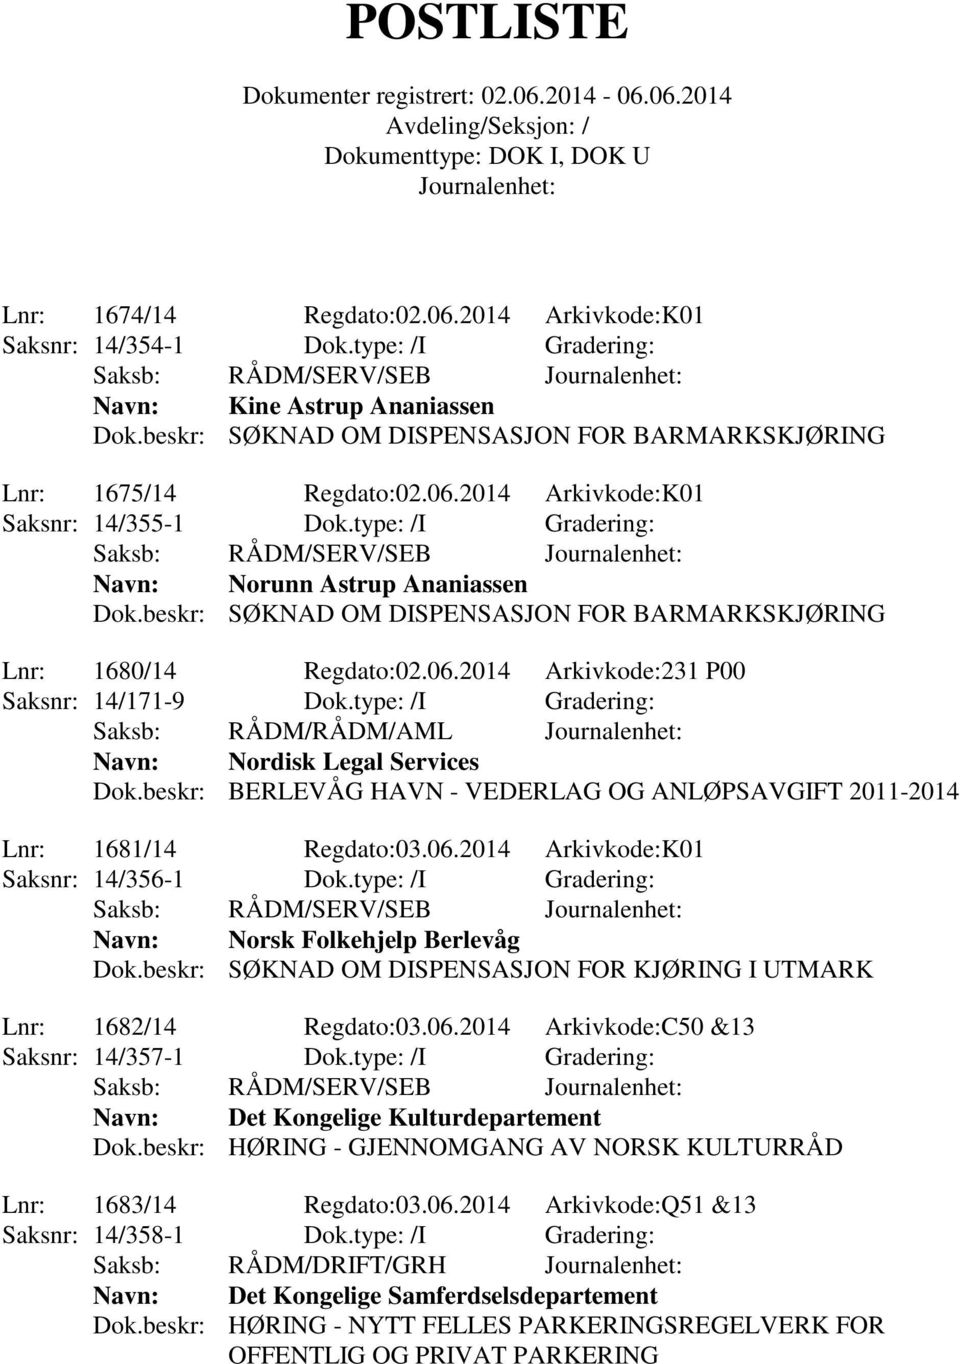 type: /I Gradering: Saksb: RÅDM/RÅDM/AML Navn: Nordisk Legal Services Dok.beskr: BERLEVÅG HAVN - VEDERLAG OG ANLØPSAVGIFT 2011-2014 Lnr: 1681/14 Regdato:03.06.2014 Arkivkode:K01 Saksnr: 14/356-1 Dok.